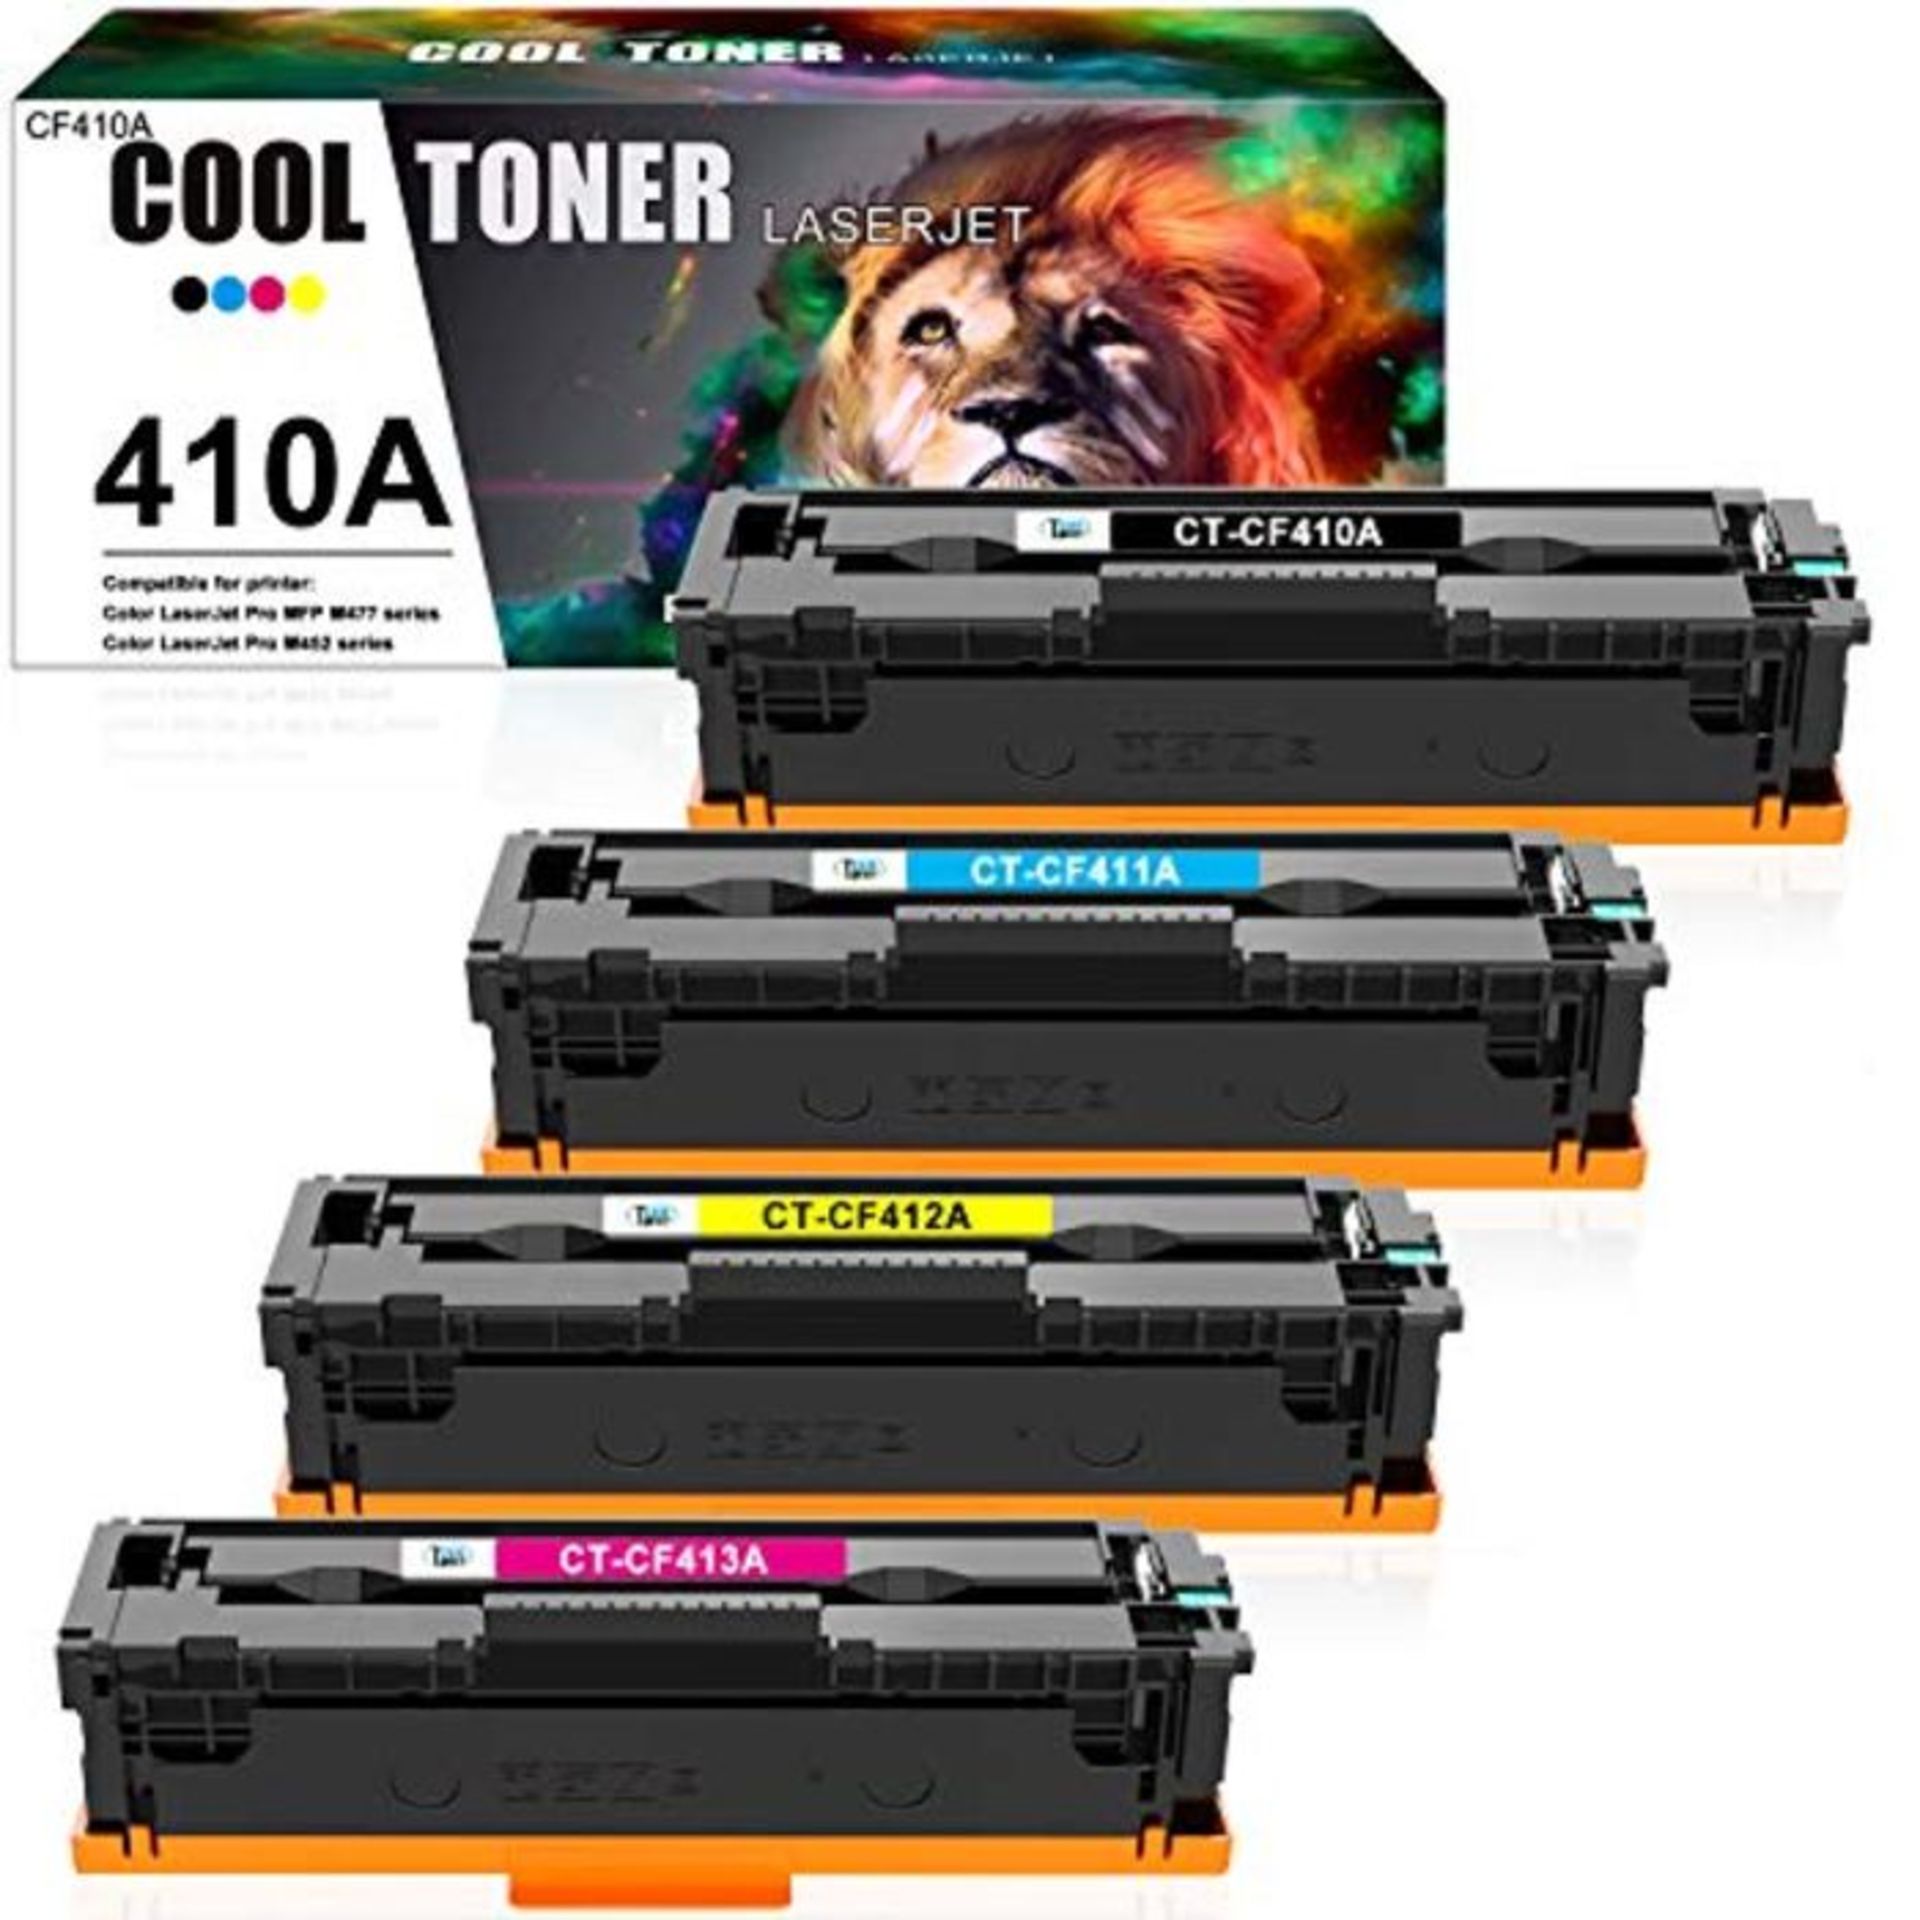 Cool Toner Compatible Toner Cartridge Replacement for HP 410A CF410A CF411A CF412A CF4